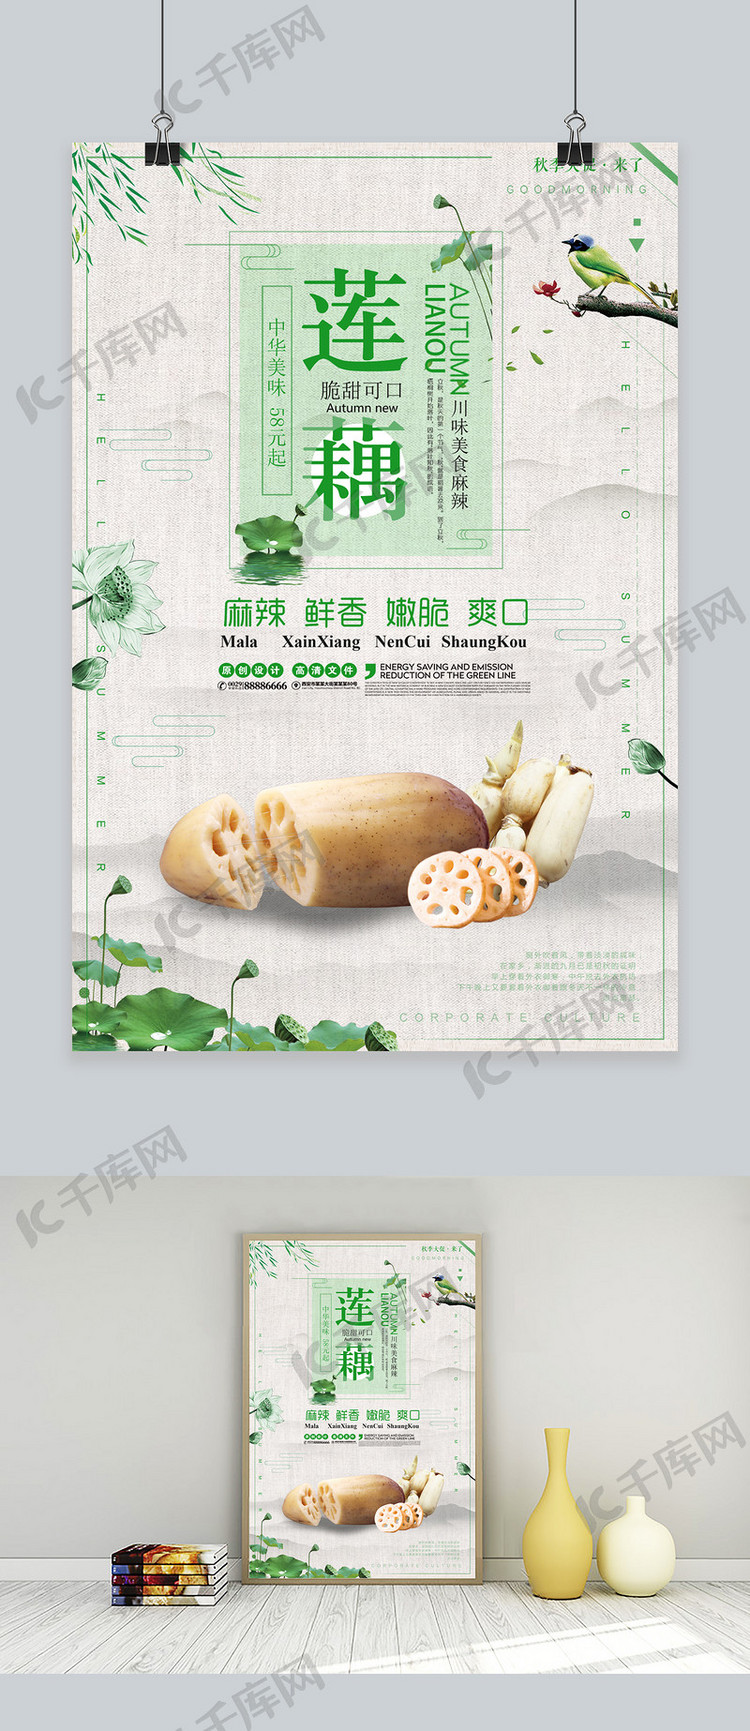 简约大气中国风莲藕创意宣传海报